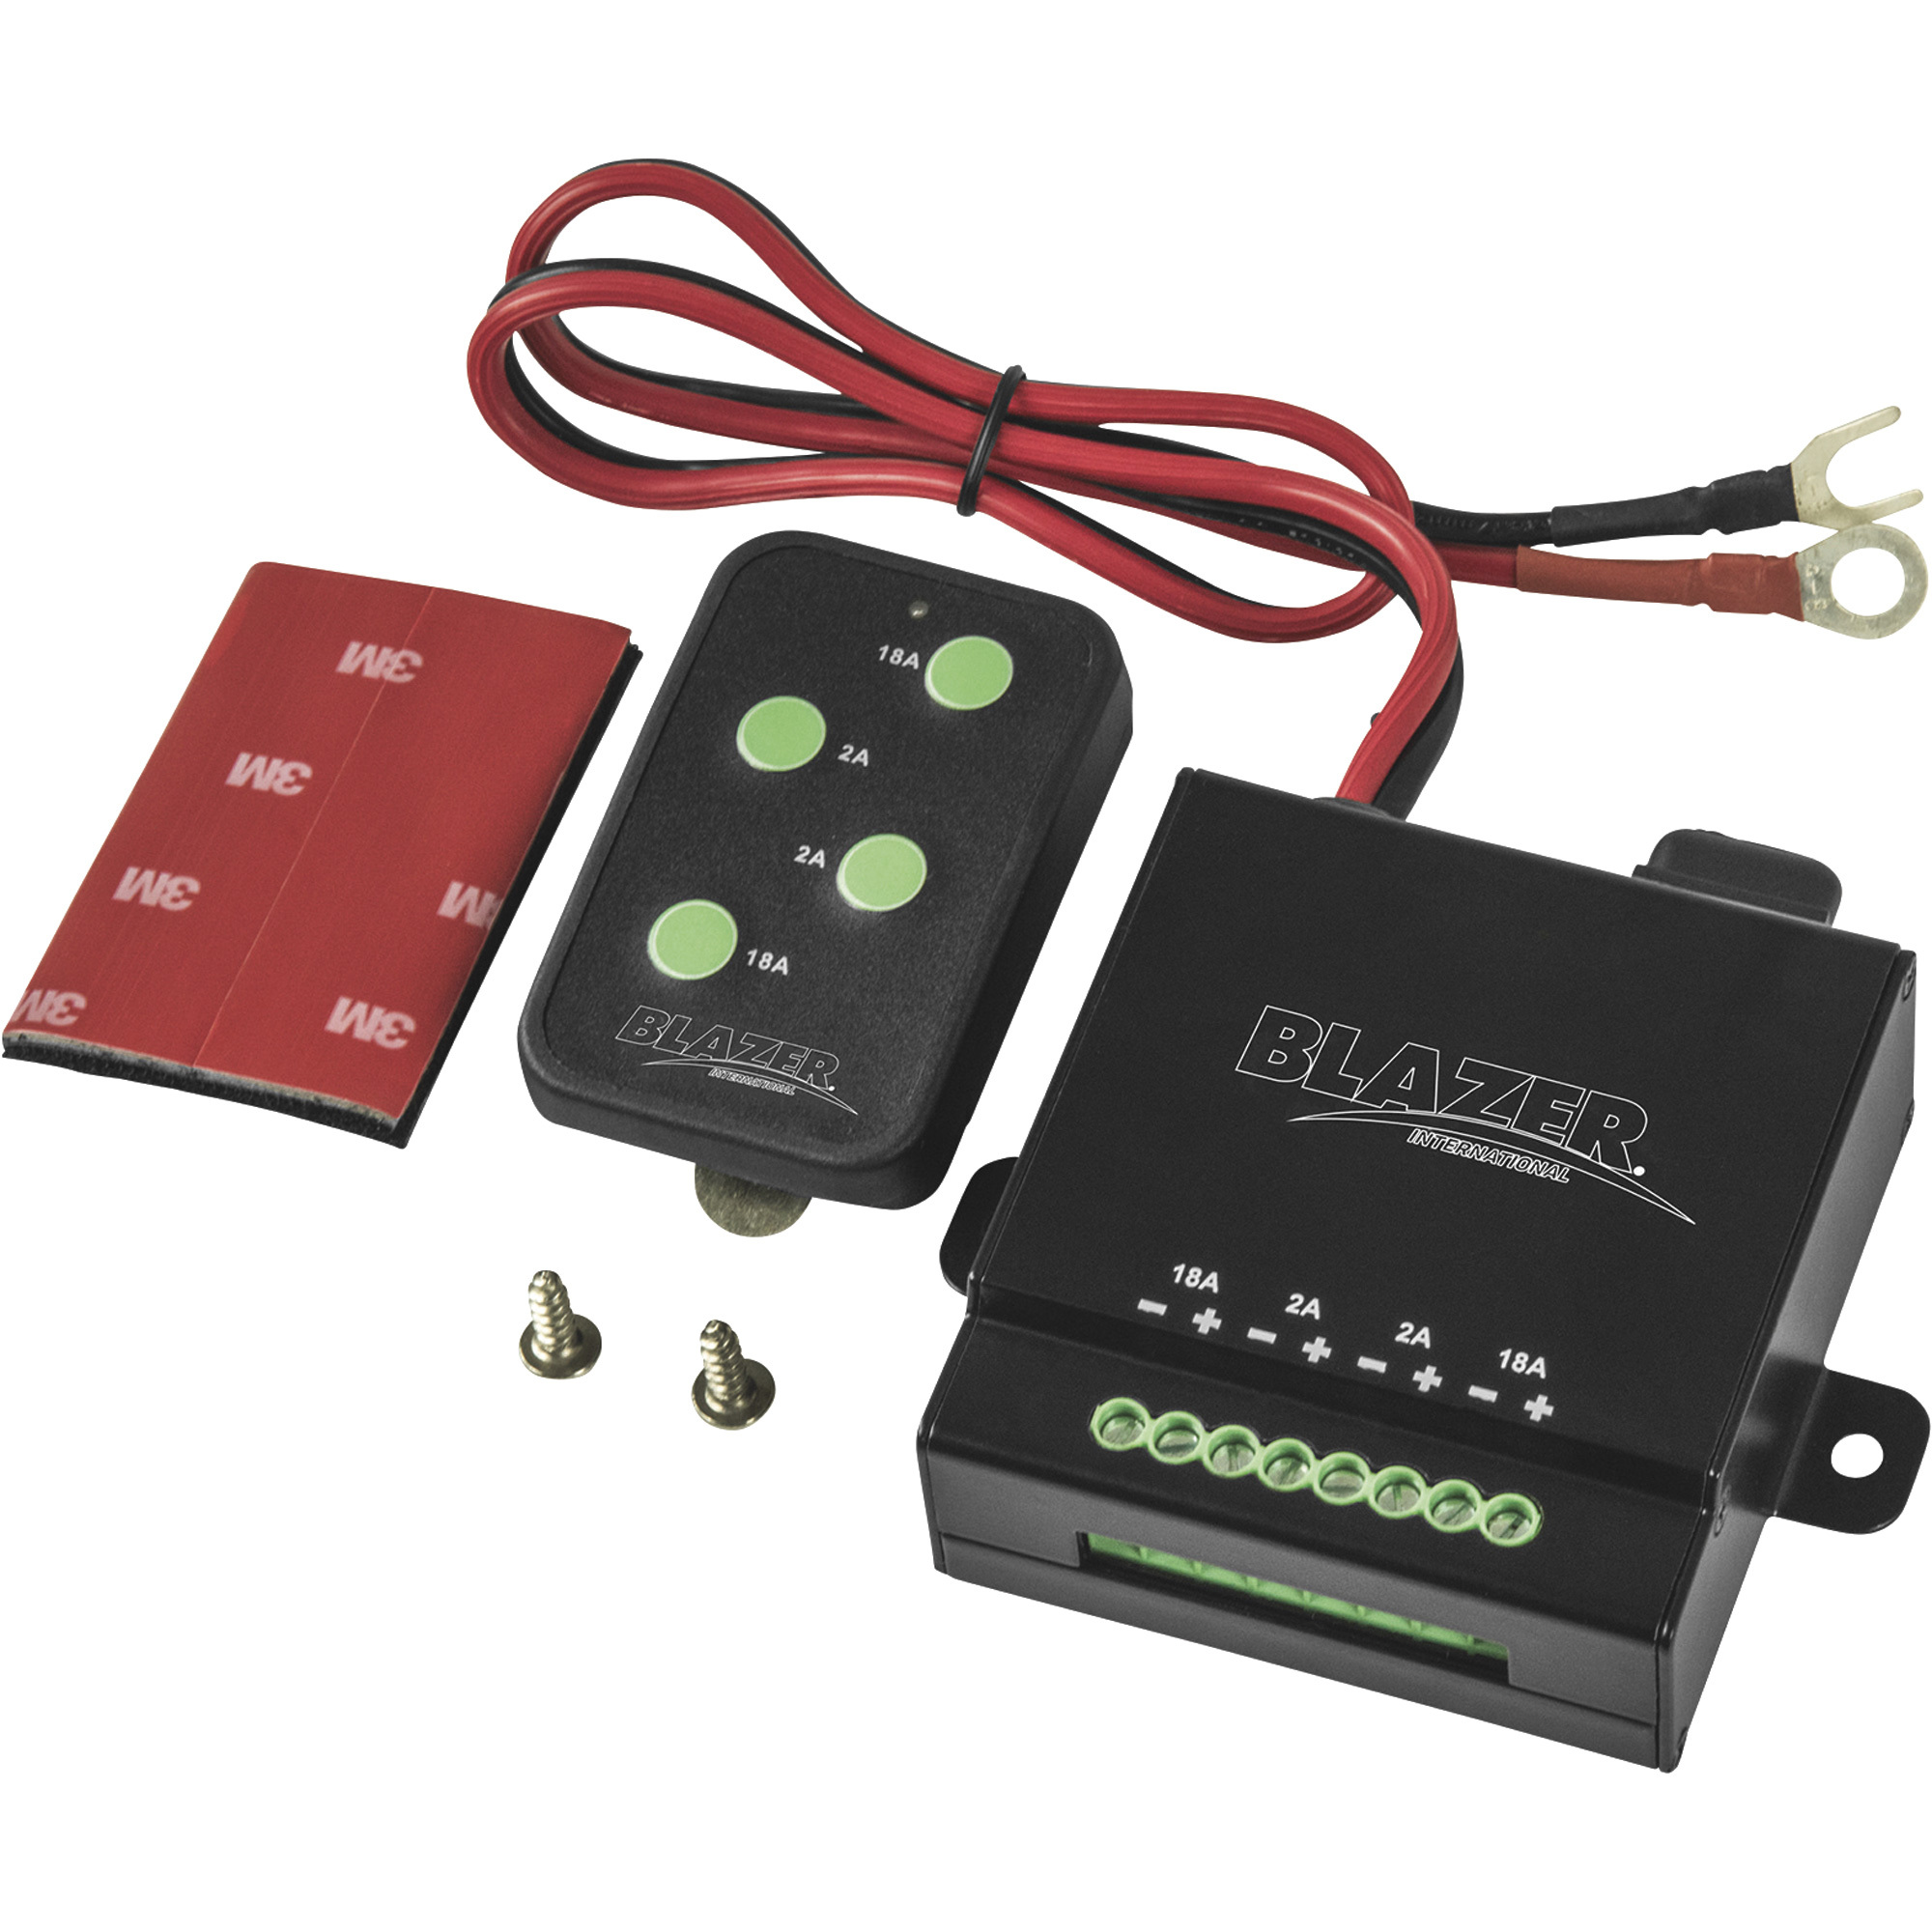 Blazer Remote Control Wireless Lighting System â Model CWL622